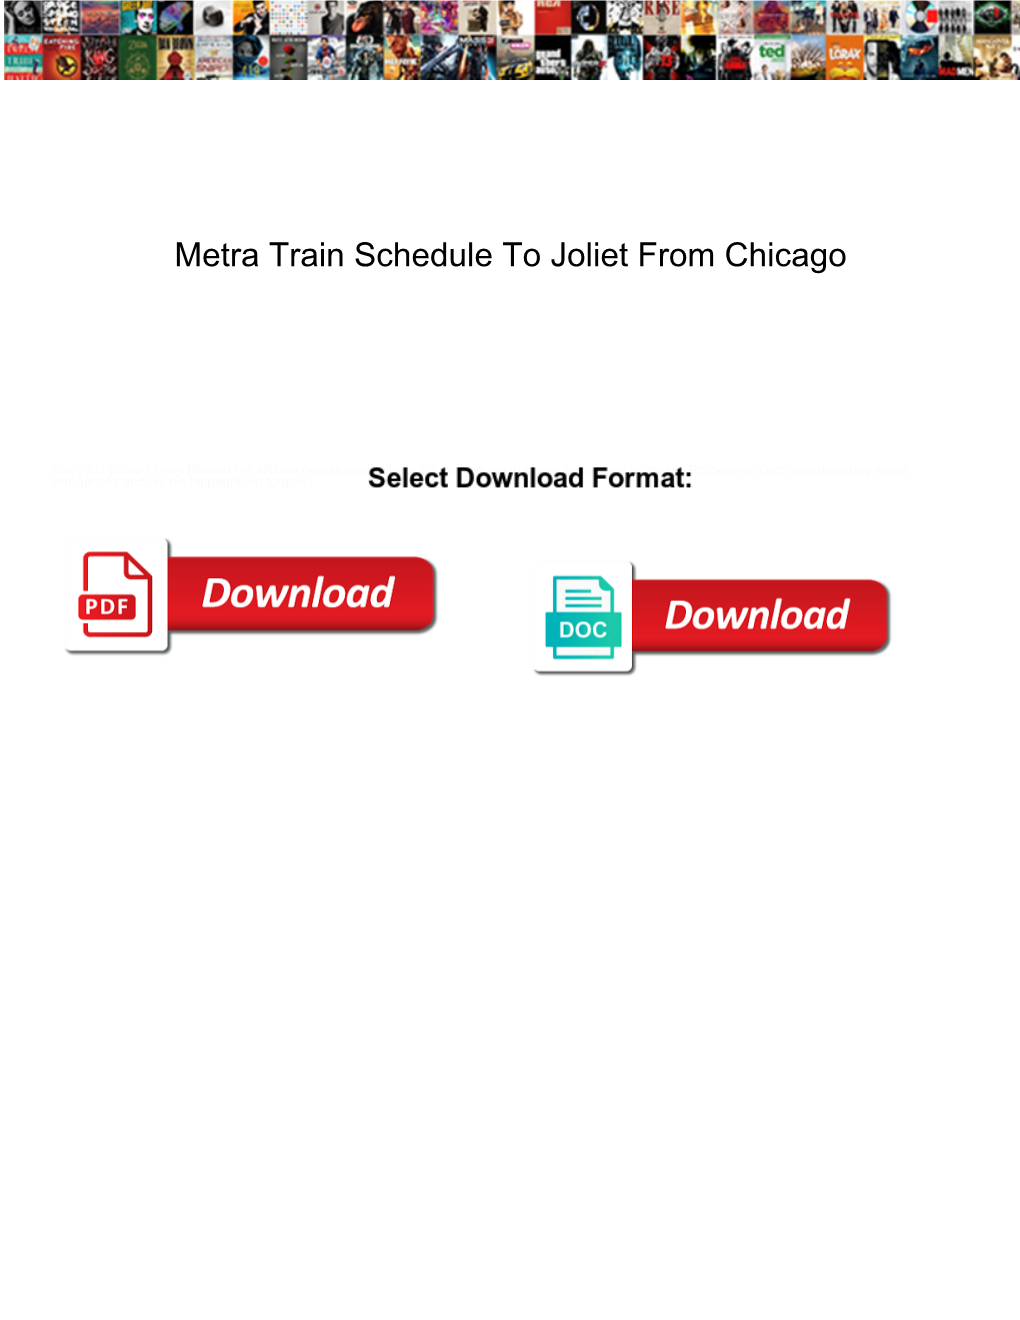 Metra Train Schedule to Joliet from Chicago